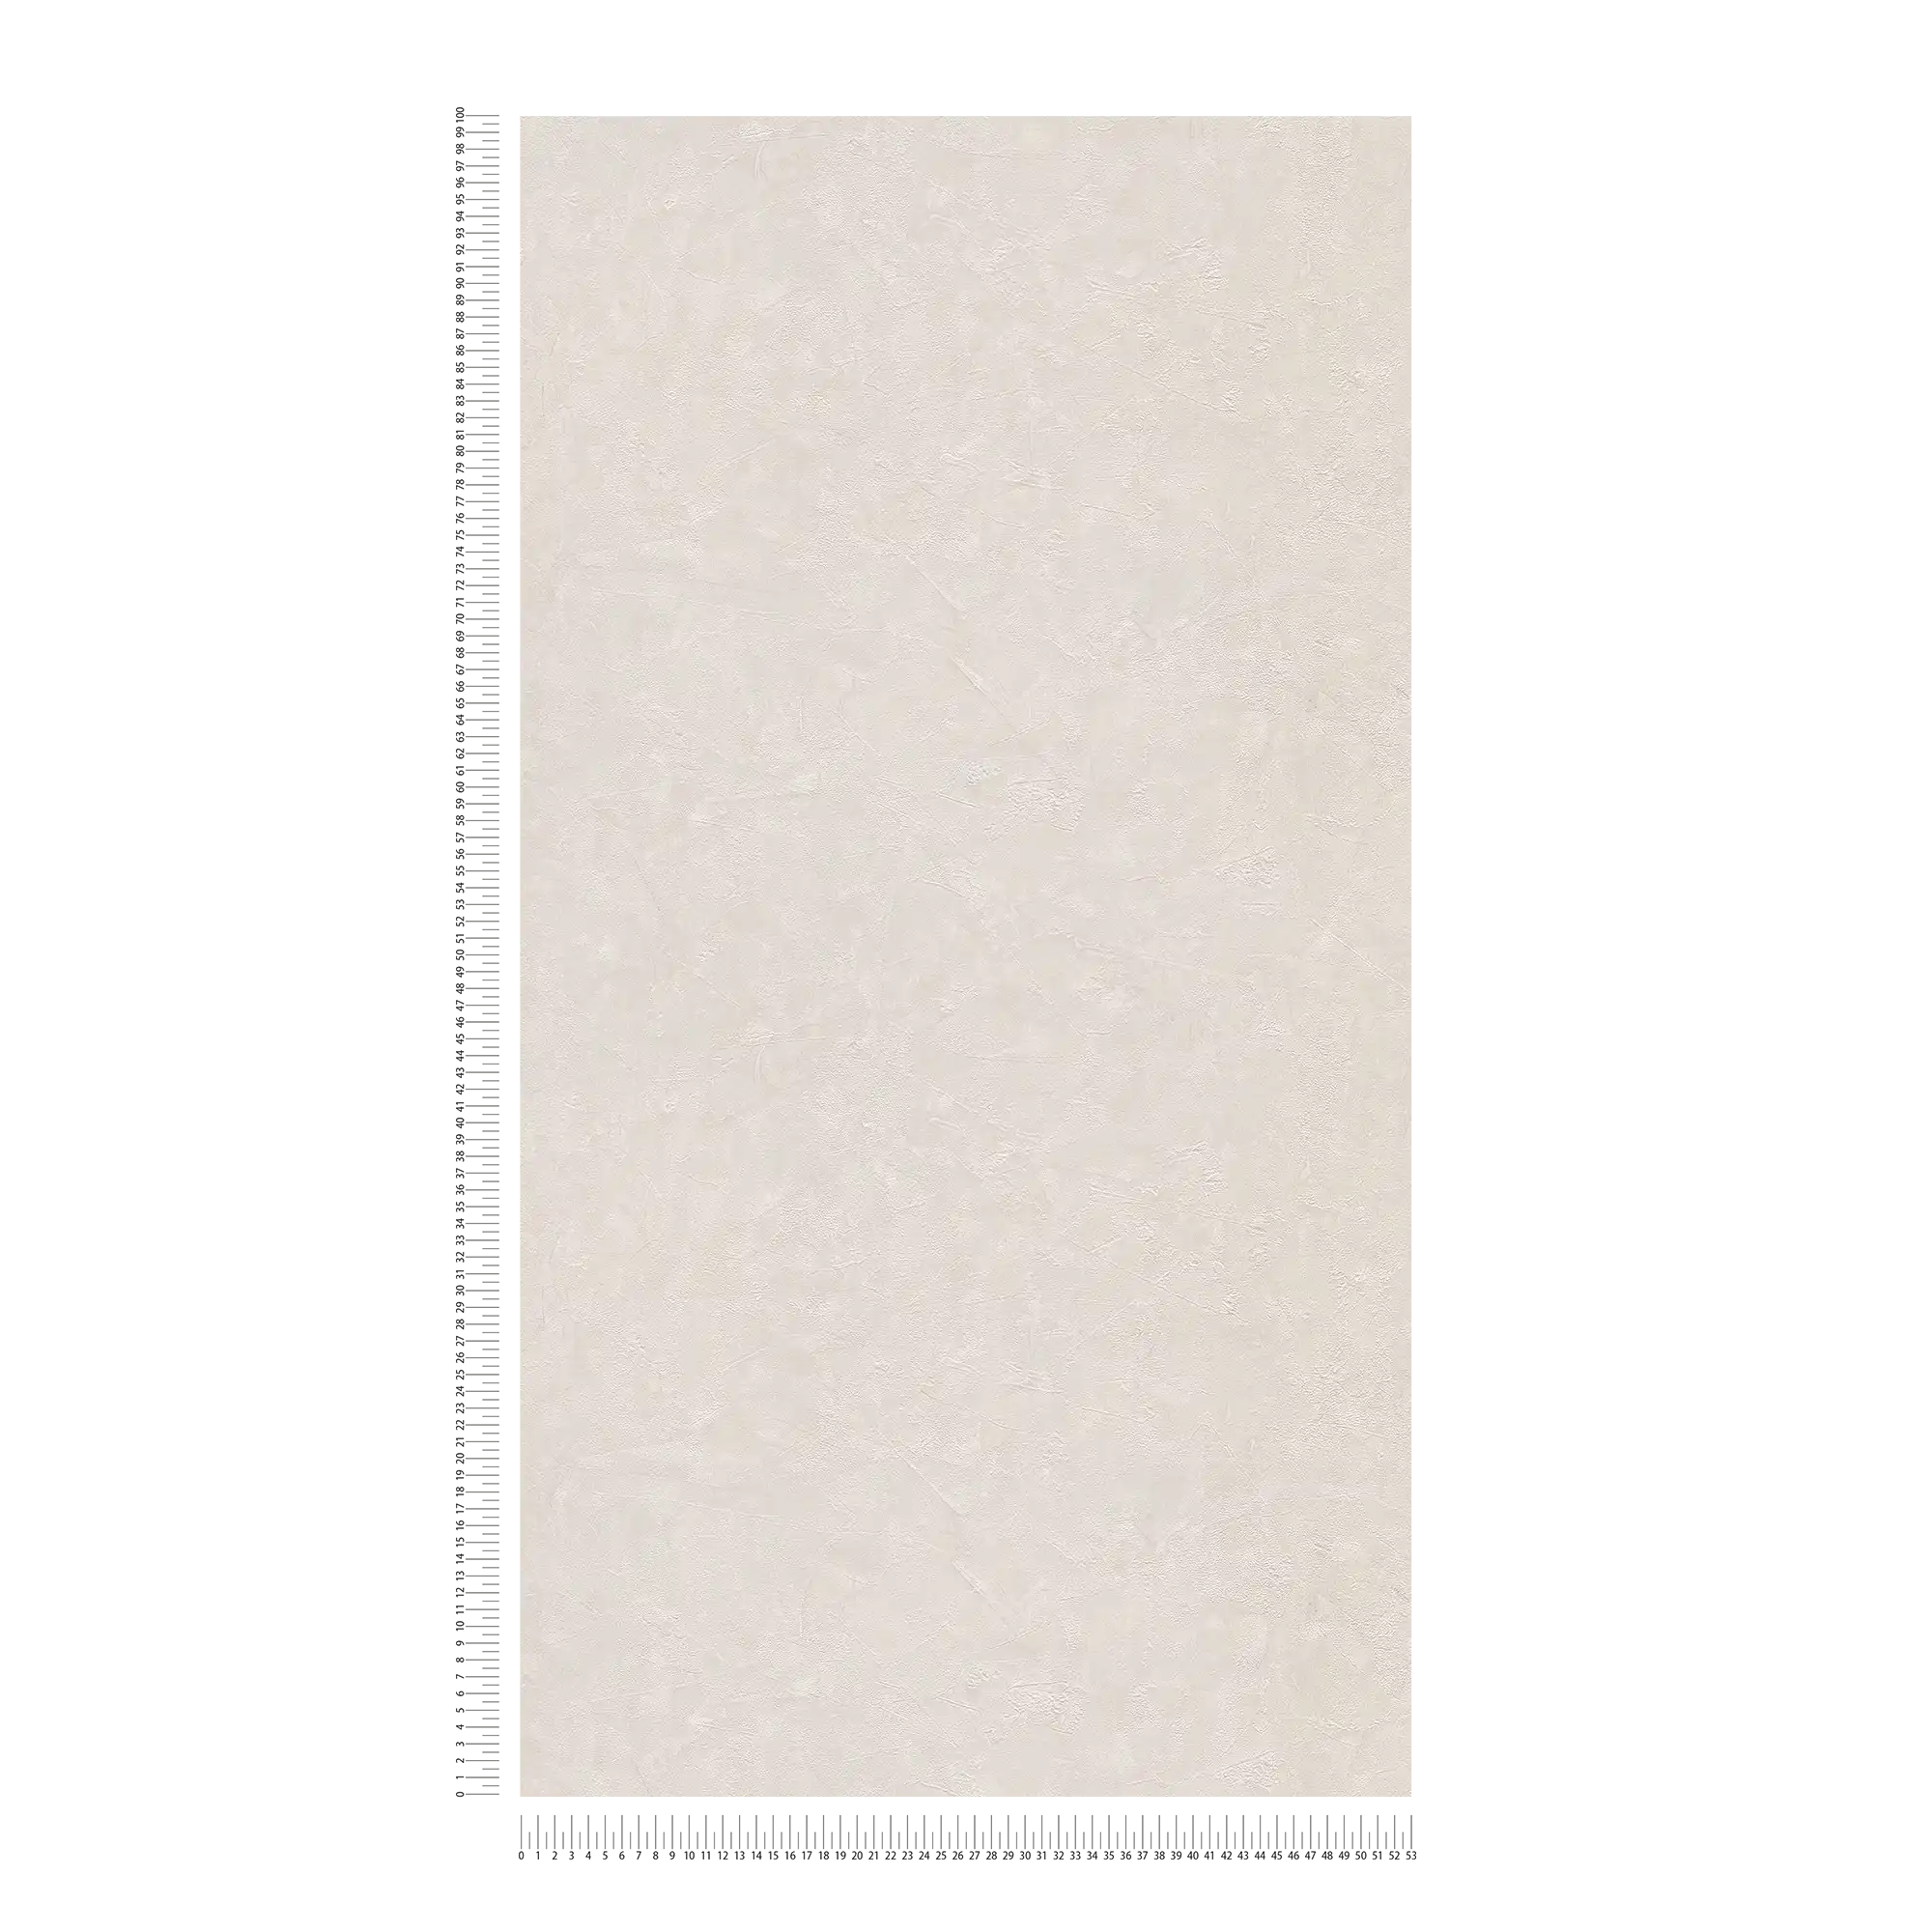             Carta da parati in gesso a tinta unita e a texture - Crema, grigio
        